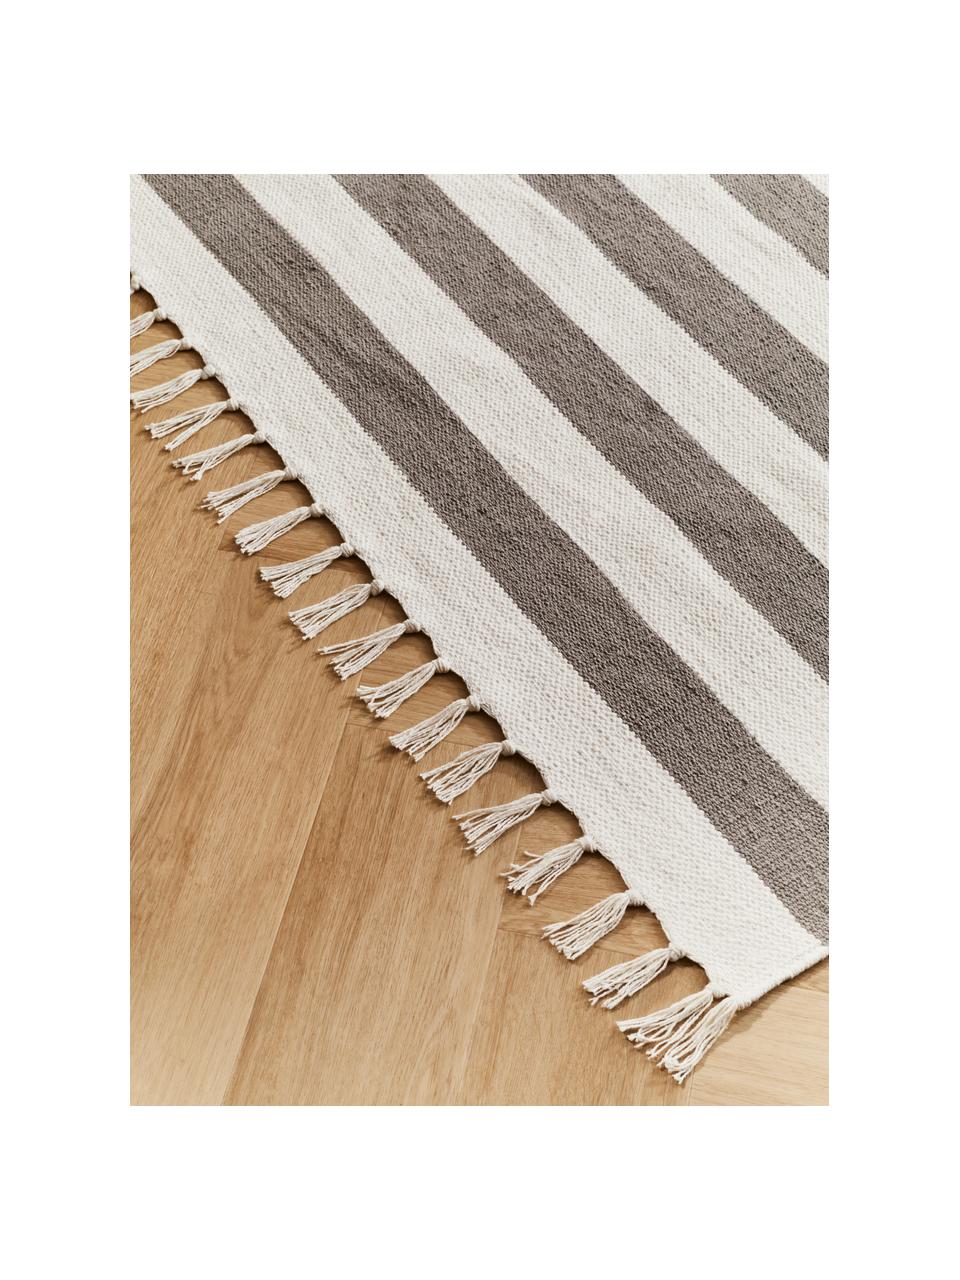 Tappeto a righe in cotone grigio/bianco tessuto a mano Blocker, 100% cotone certificato GRS, Grigio, Larg. 200 x Lung. 300 cm (taglia L)